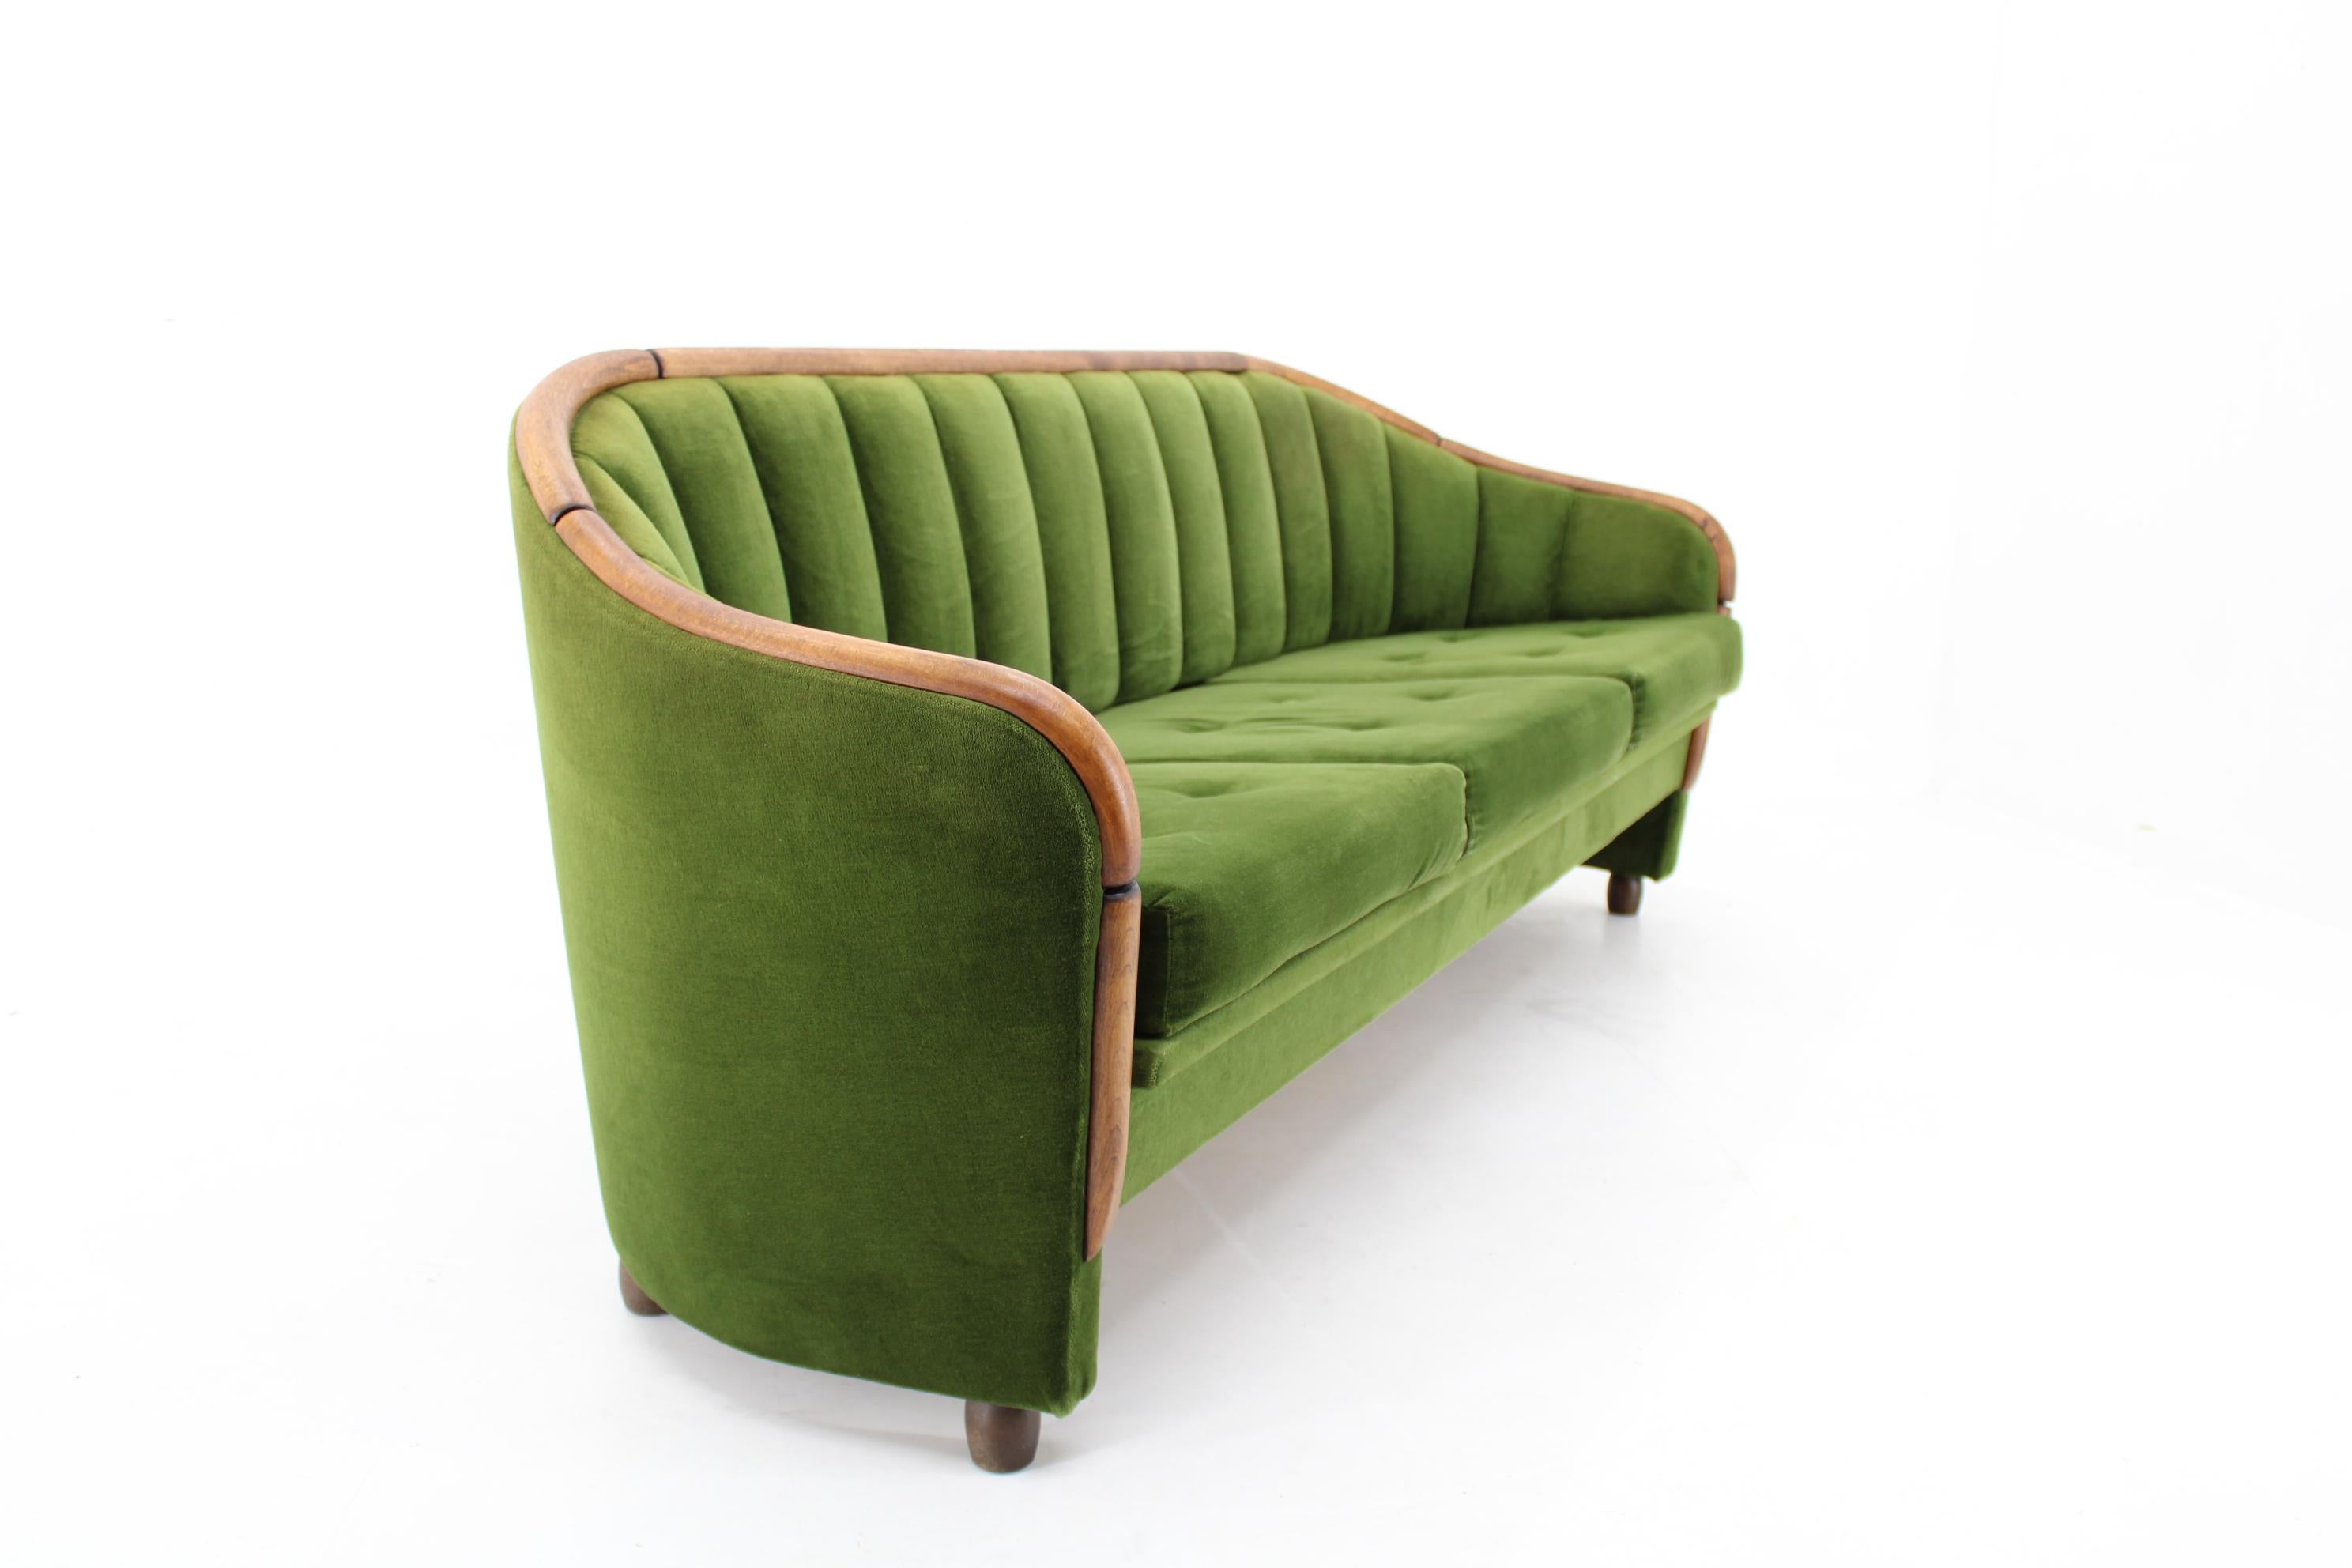 1950s sofa styles